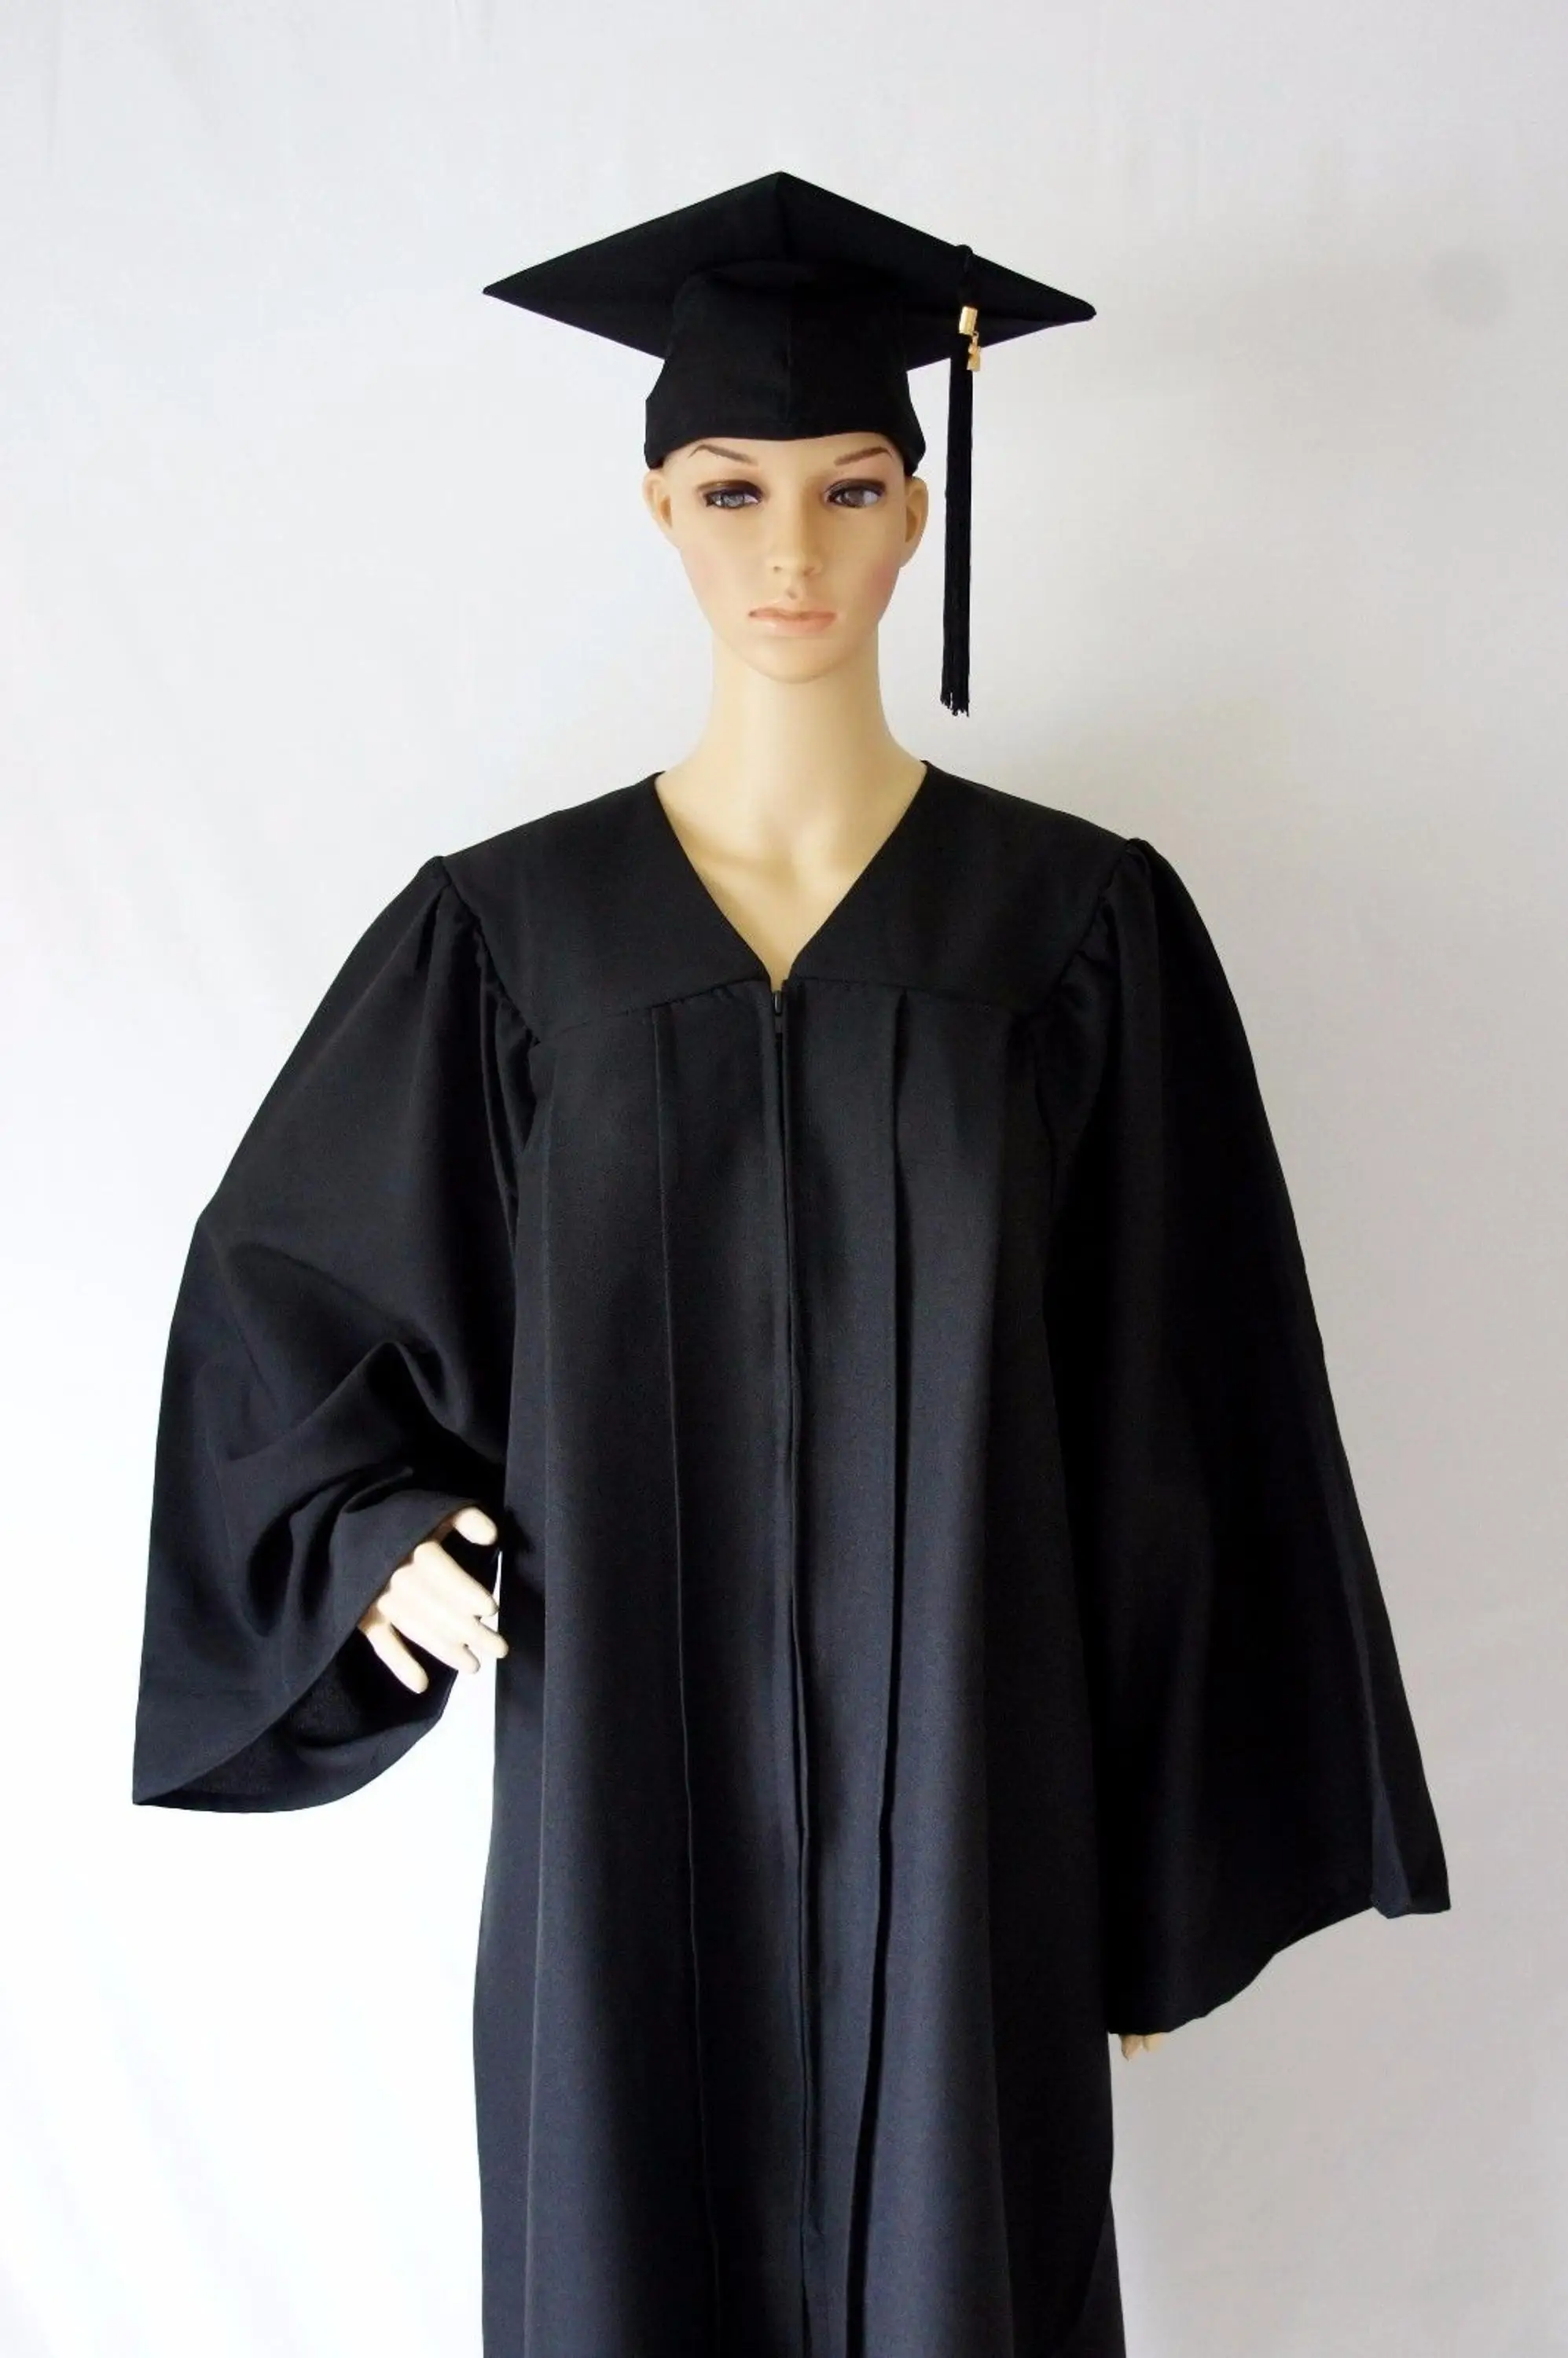 College Uniform Design For Graduation Gowns - Buy Graduation Gowns ...